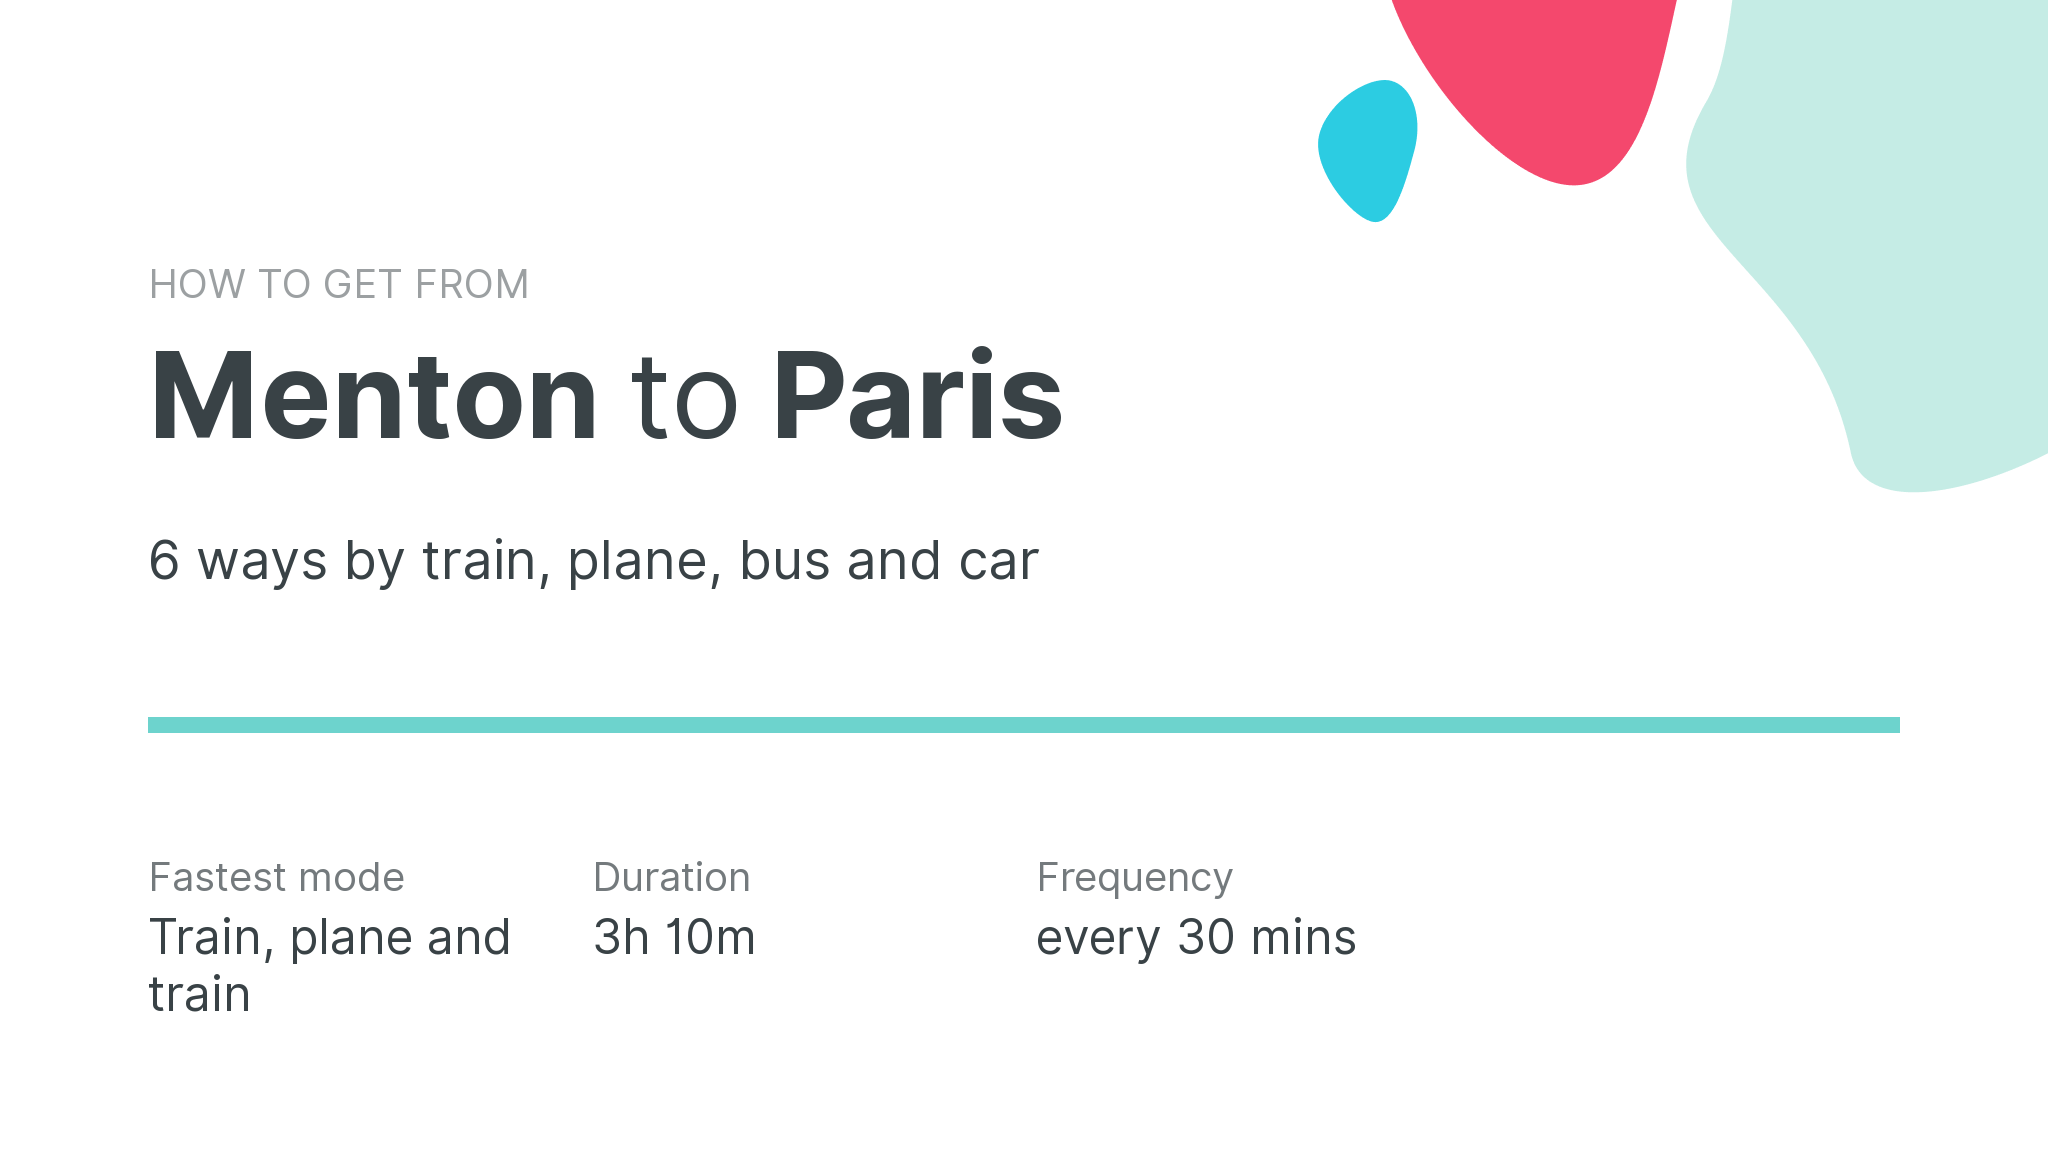 How do I get from Menton to Paris